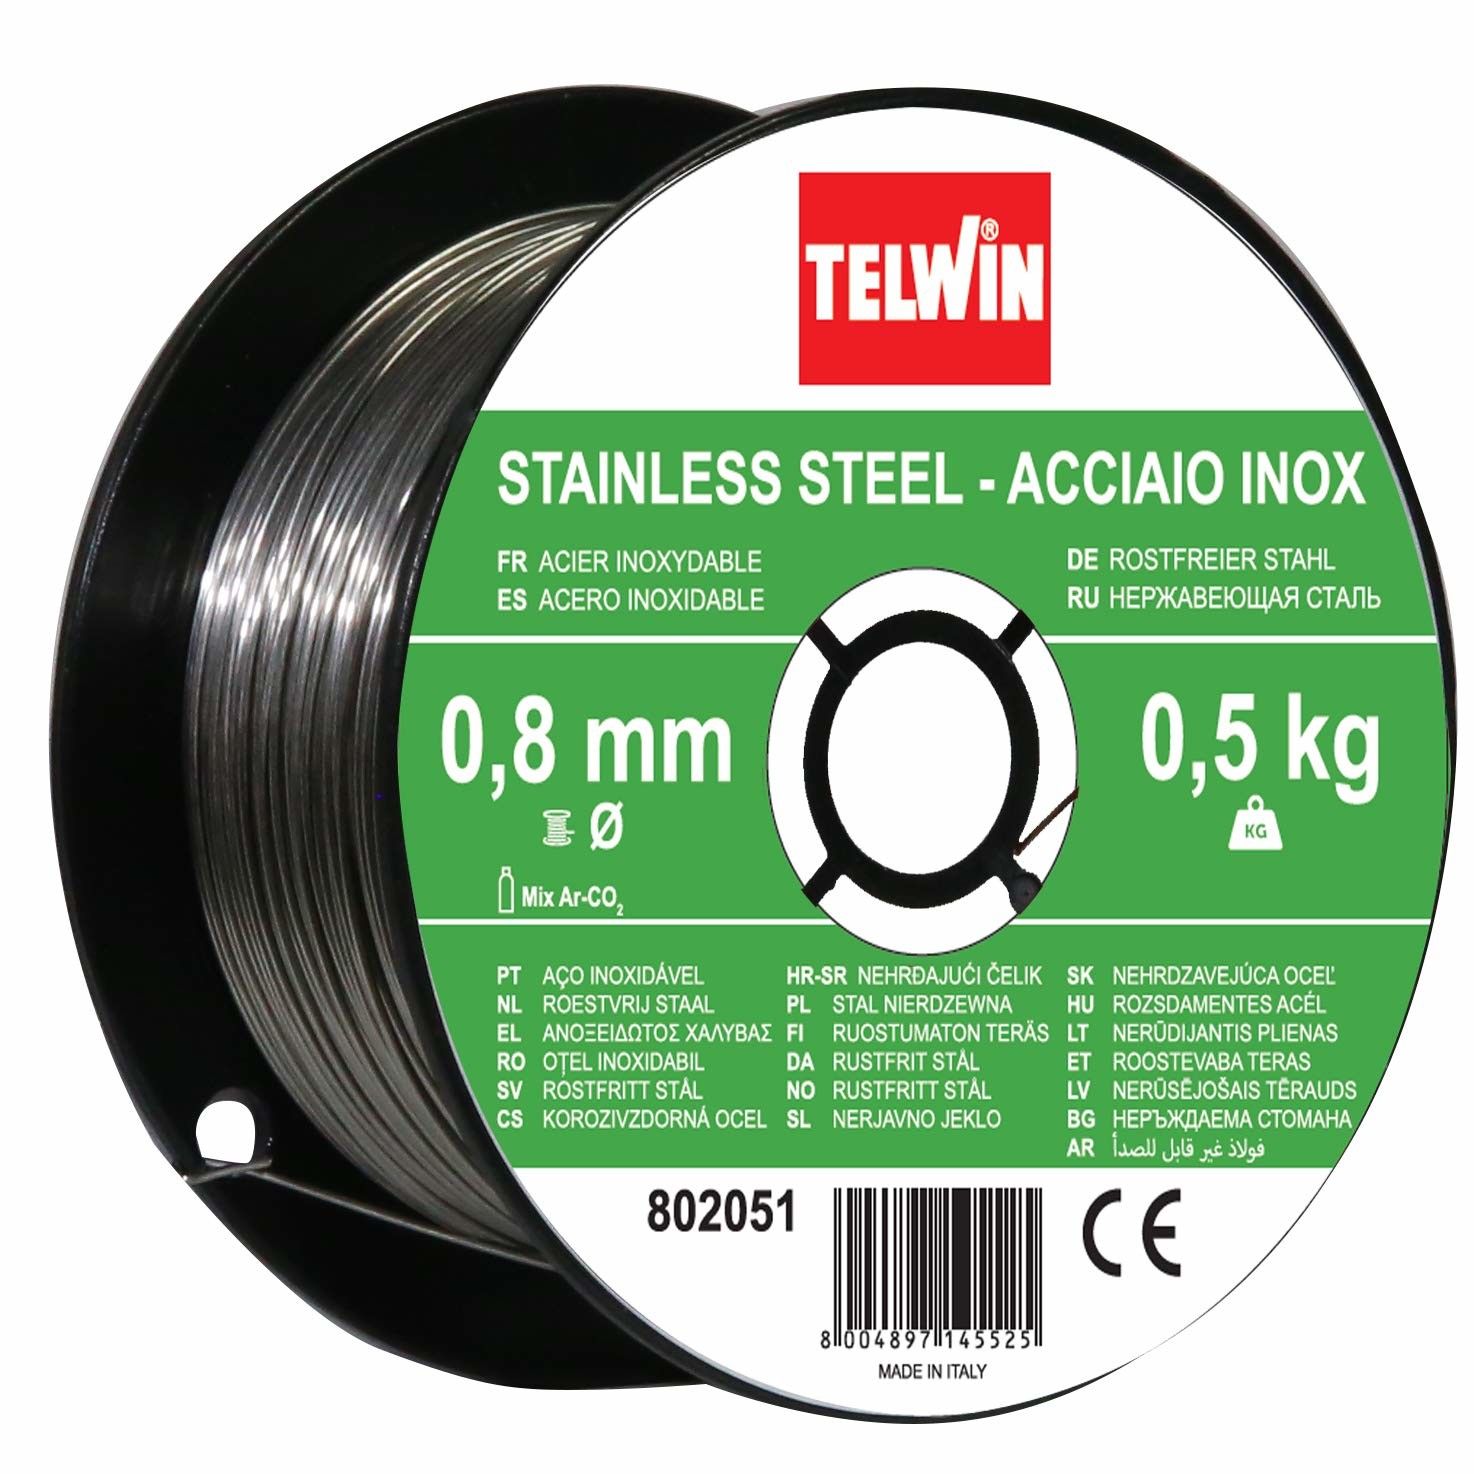 Telwin 802051 Bobina filo per Saldatura su Acciaio Inossidabile, D 0,8 mm (0,5 kg), Grigio